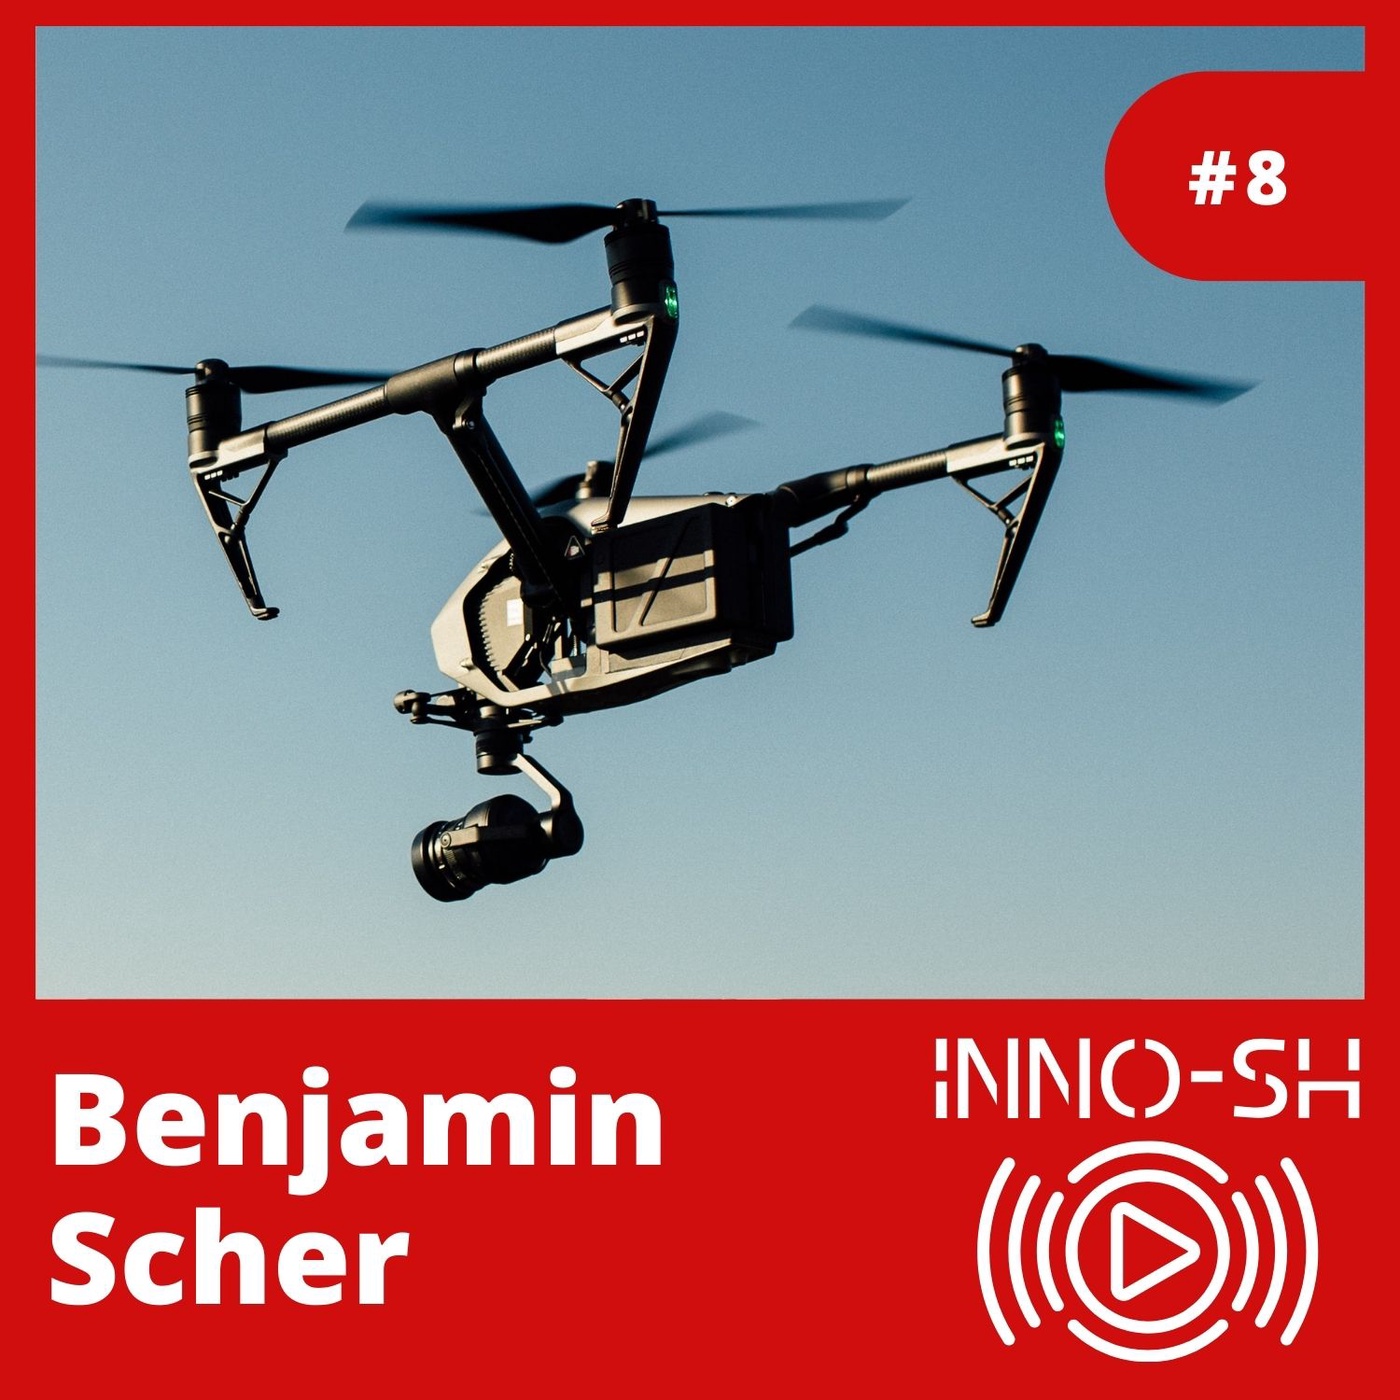 InnoSH #8 SPECIAL – Benjamin Scher von Moia über den Stand der DroneEconomy, UAM-Innoregion-SH und TakeOffSH